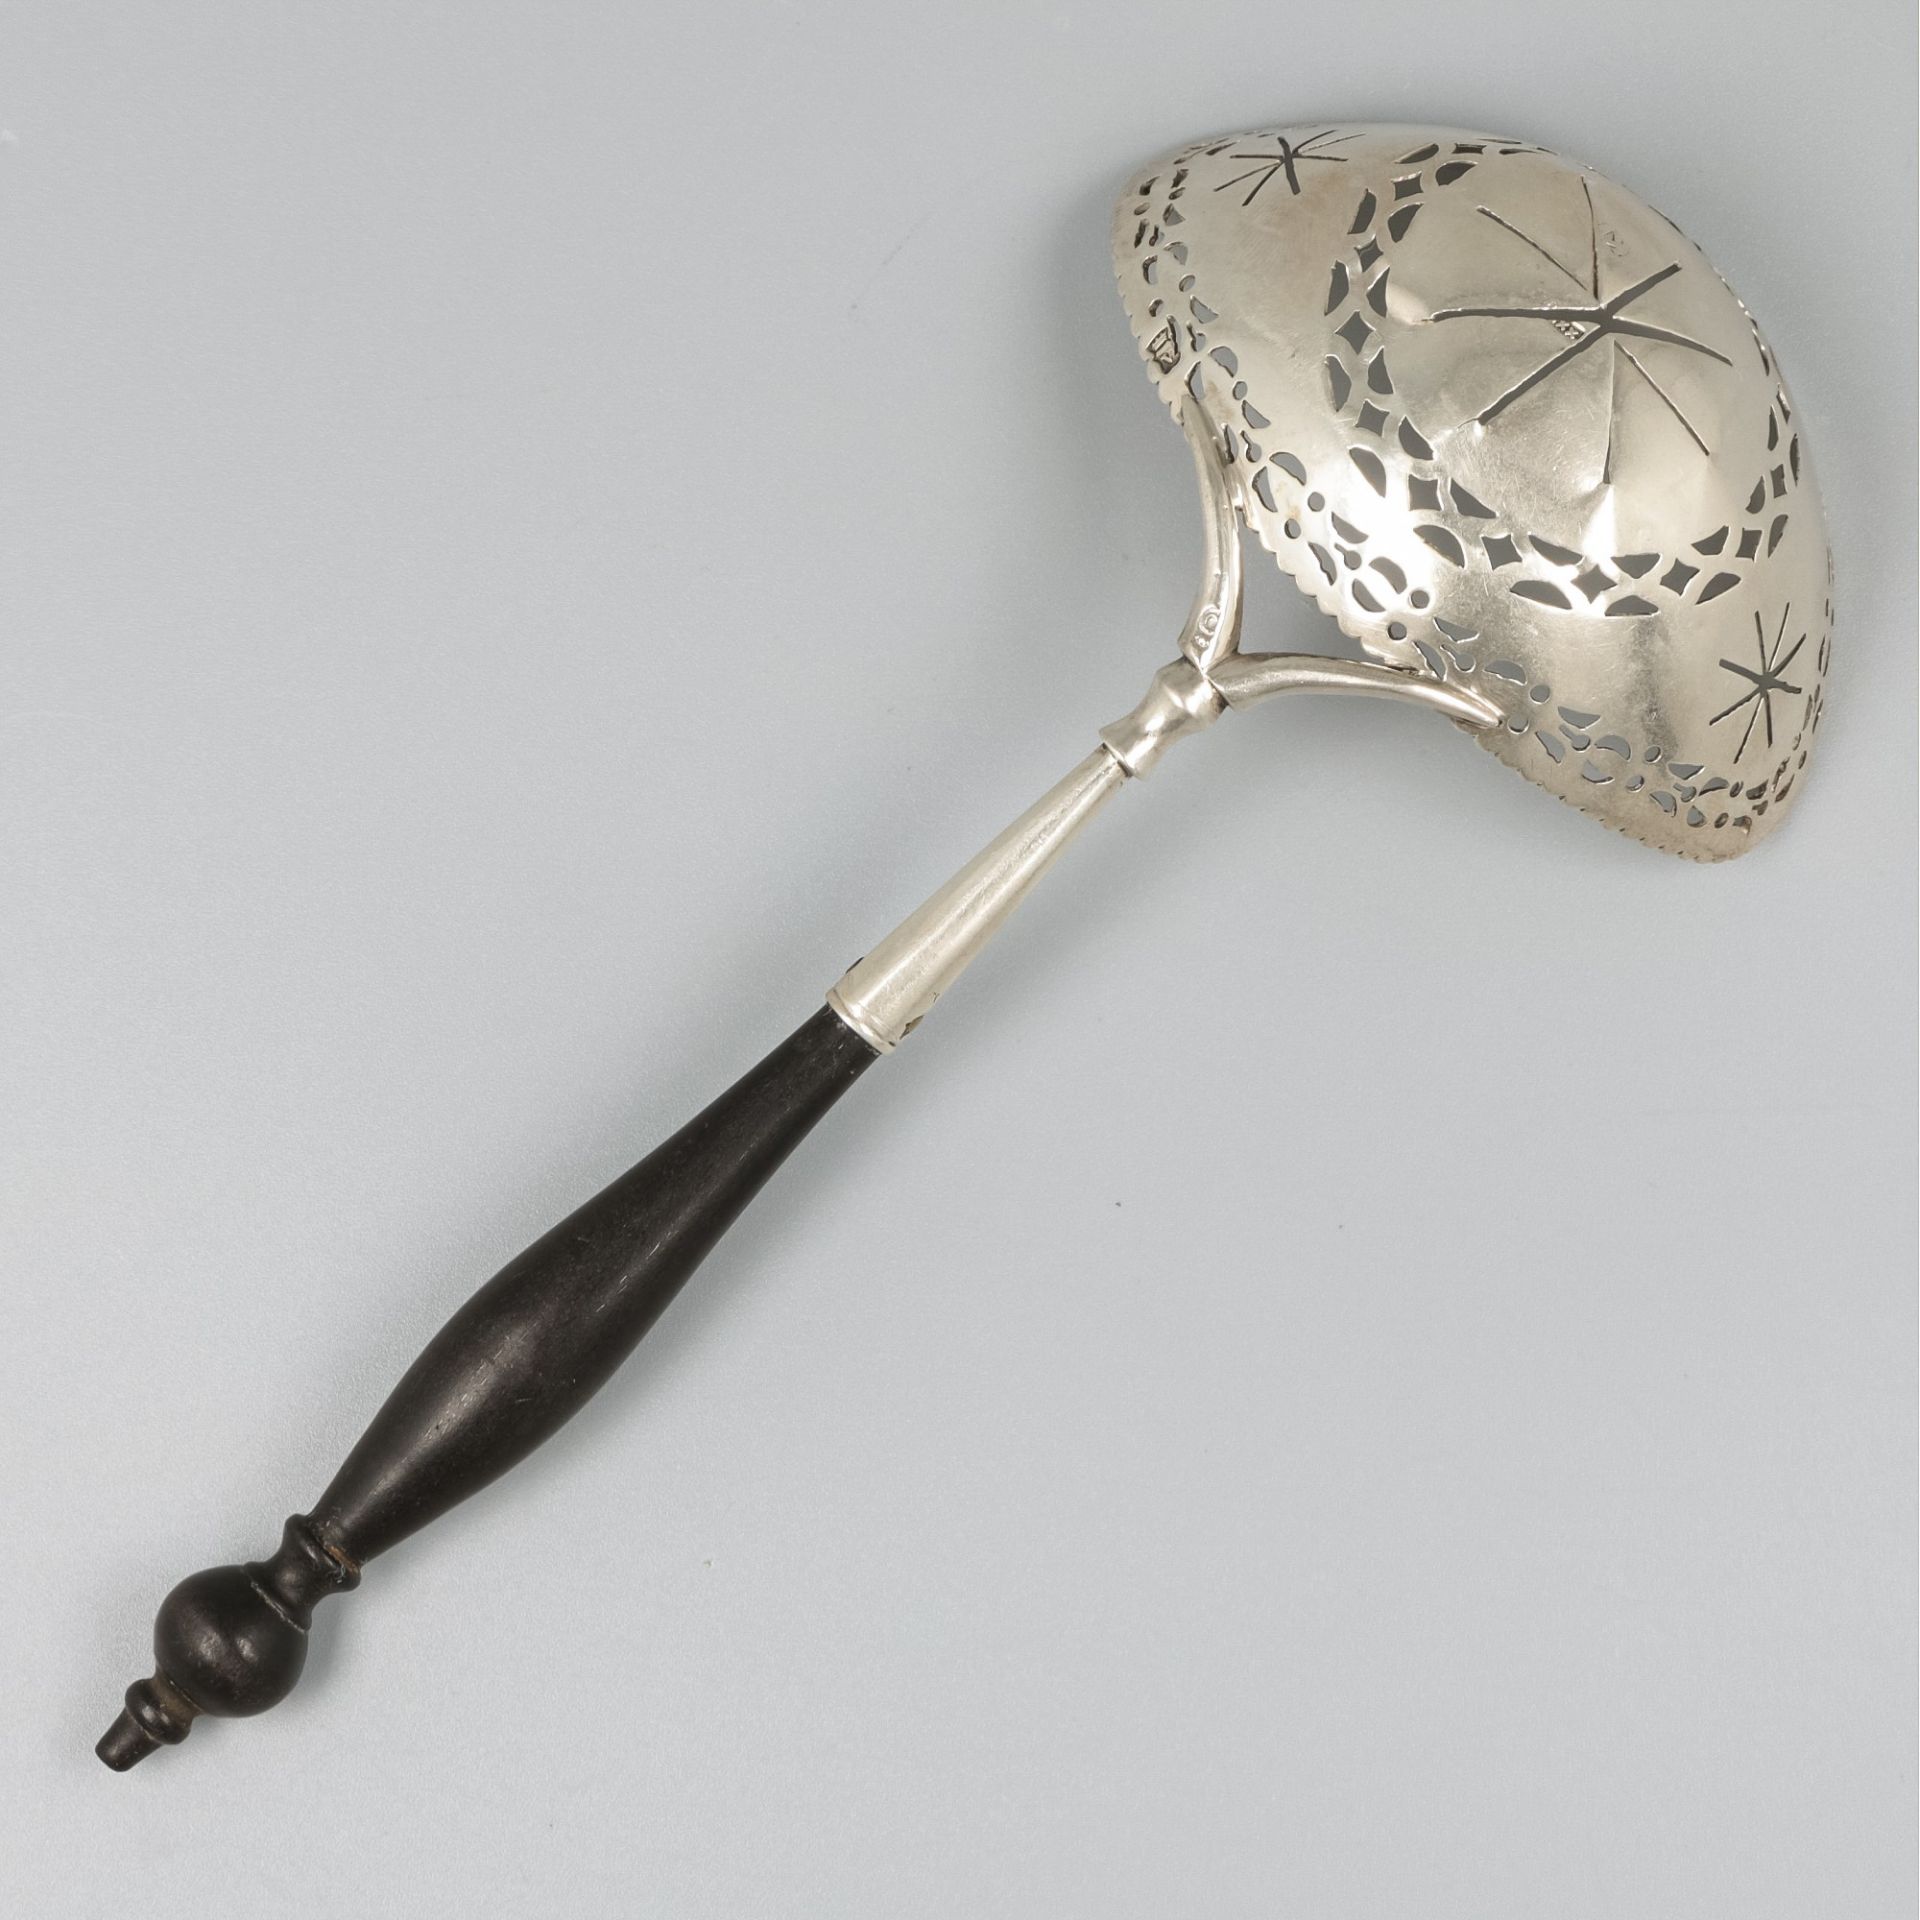 Silver sifter spoon, Adrianus Koekebakker, Amsterdam 1791-1811. - Image 2 of 8